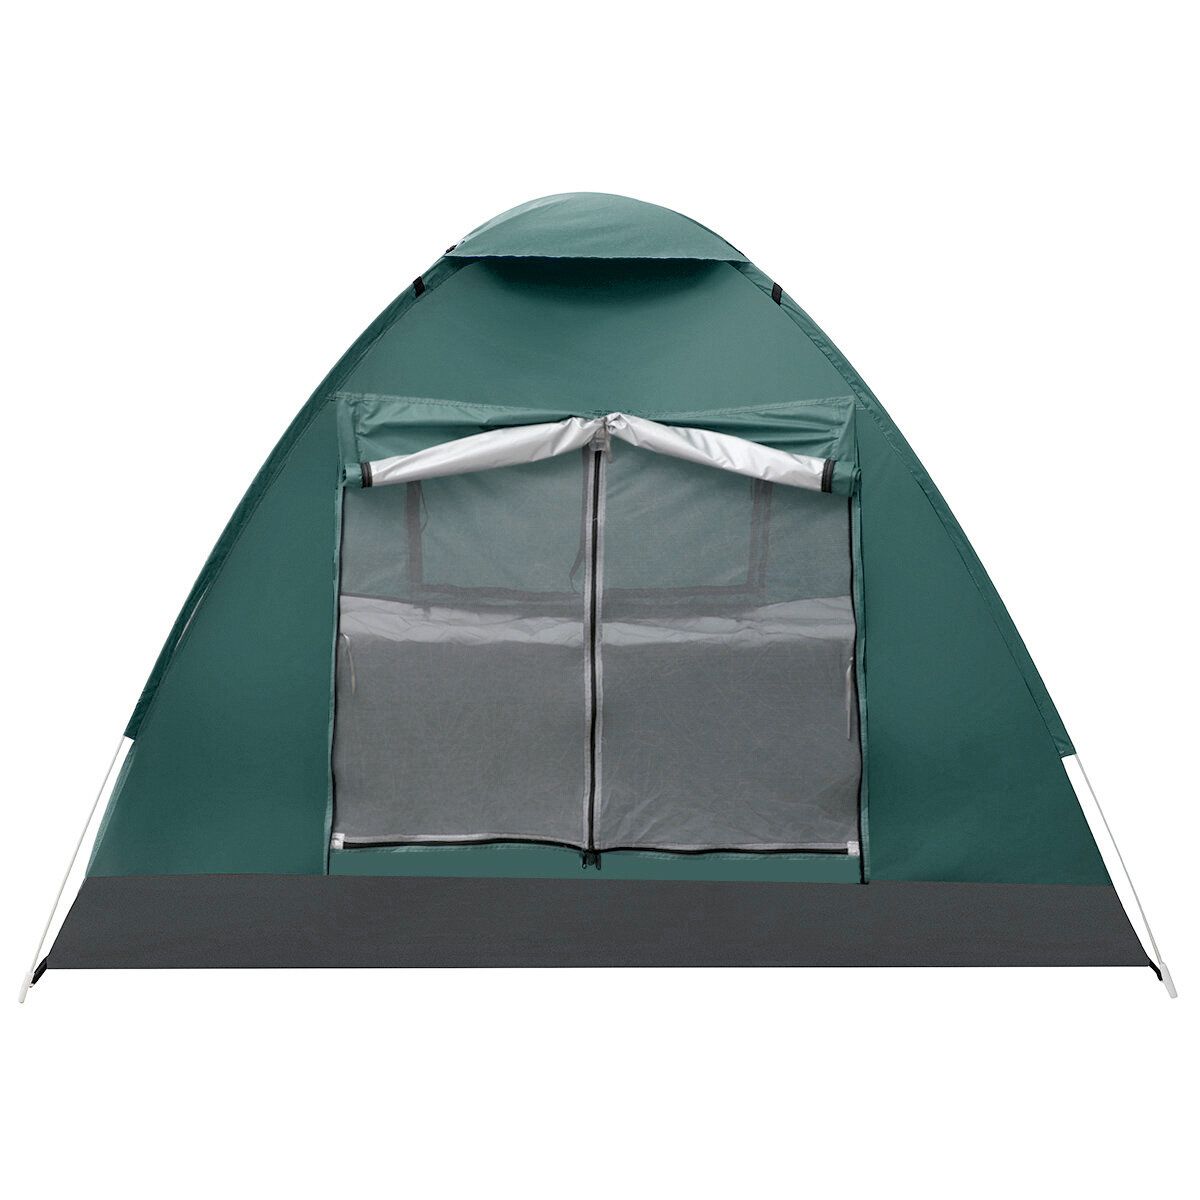 IPRee®3-4人用ダブルレイヤーキャンプテント両開きドア屋外防水日よけテント125x200x200cm釣りキャンプパーティー用